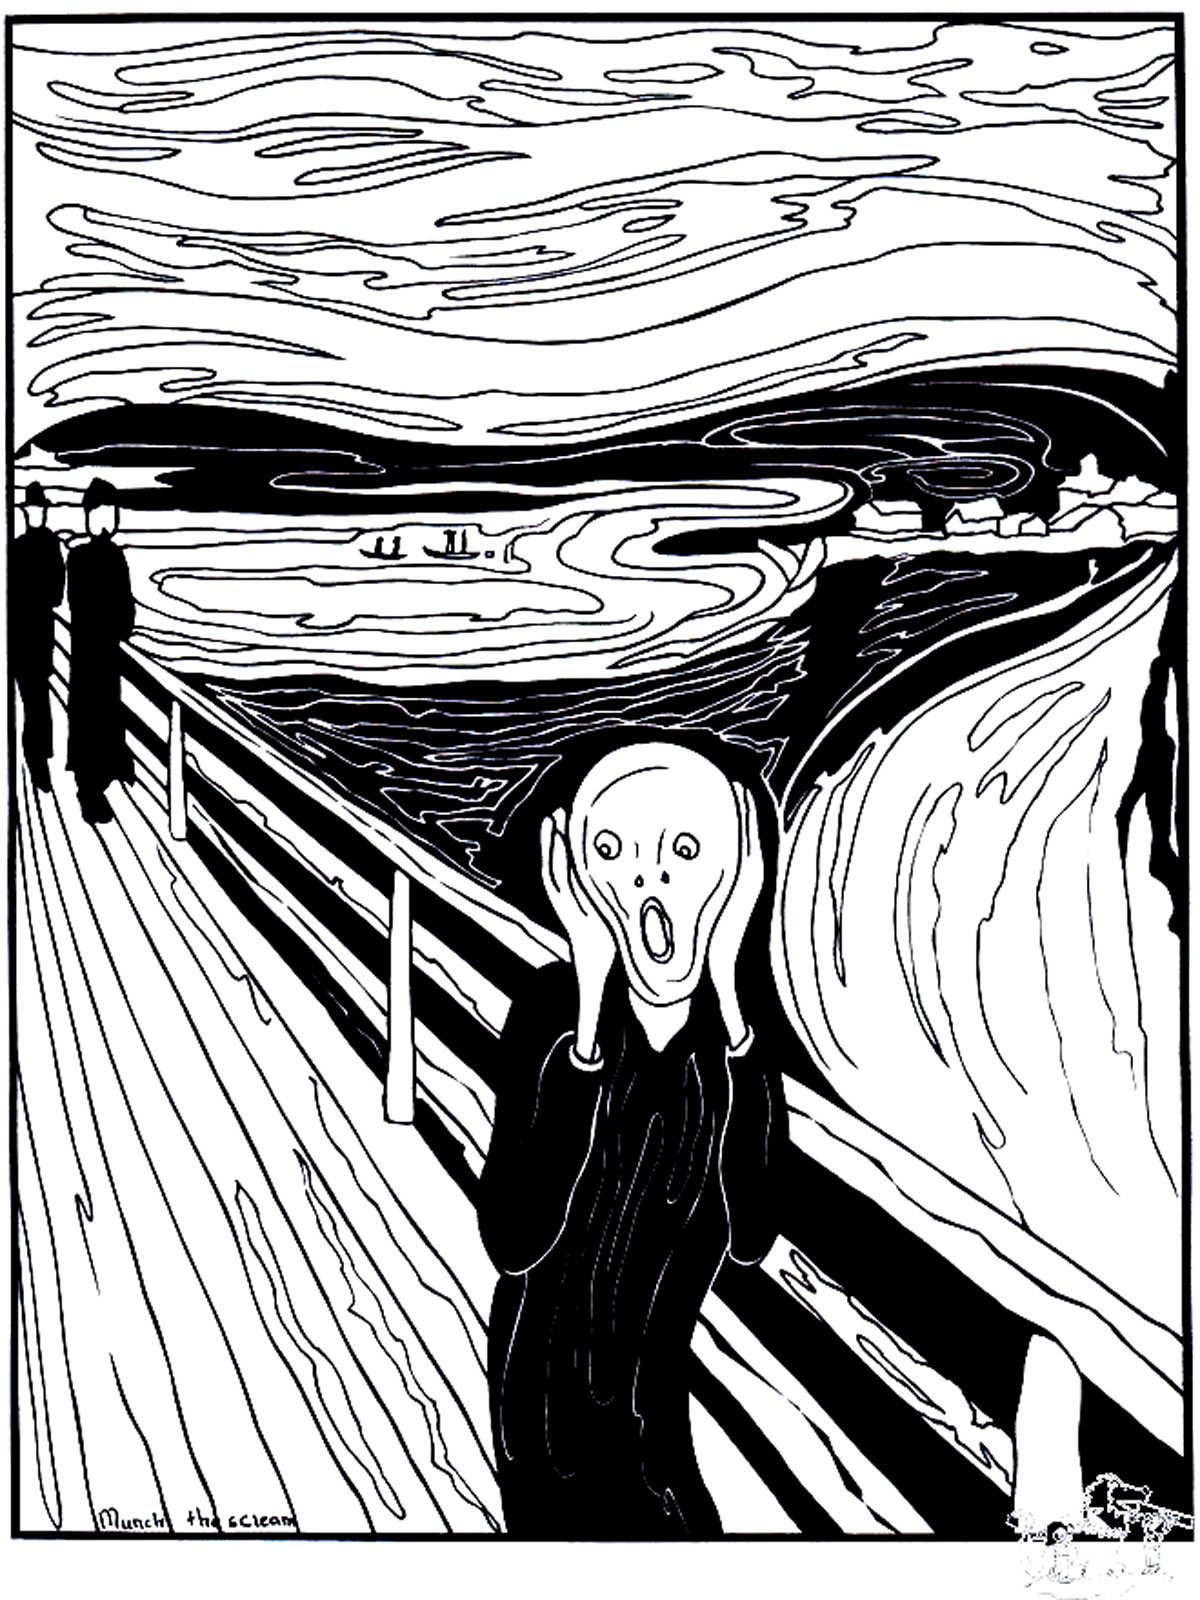 Coloreado basado en el cuadro 'El grito' (1893) de Edvard Munch'. El grito' es un cuadro emblemático que representa la sensación de opresión y angustia que a veces puede abrumarnos.Esta página para colorear es una excelente manera de sumergirse en la obra de arte. Eso sí, no te dejes atrapar demasiado por su atmósfera mortificante...